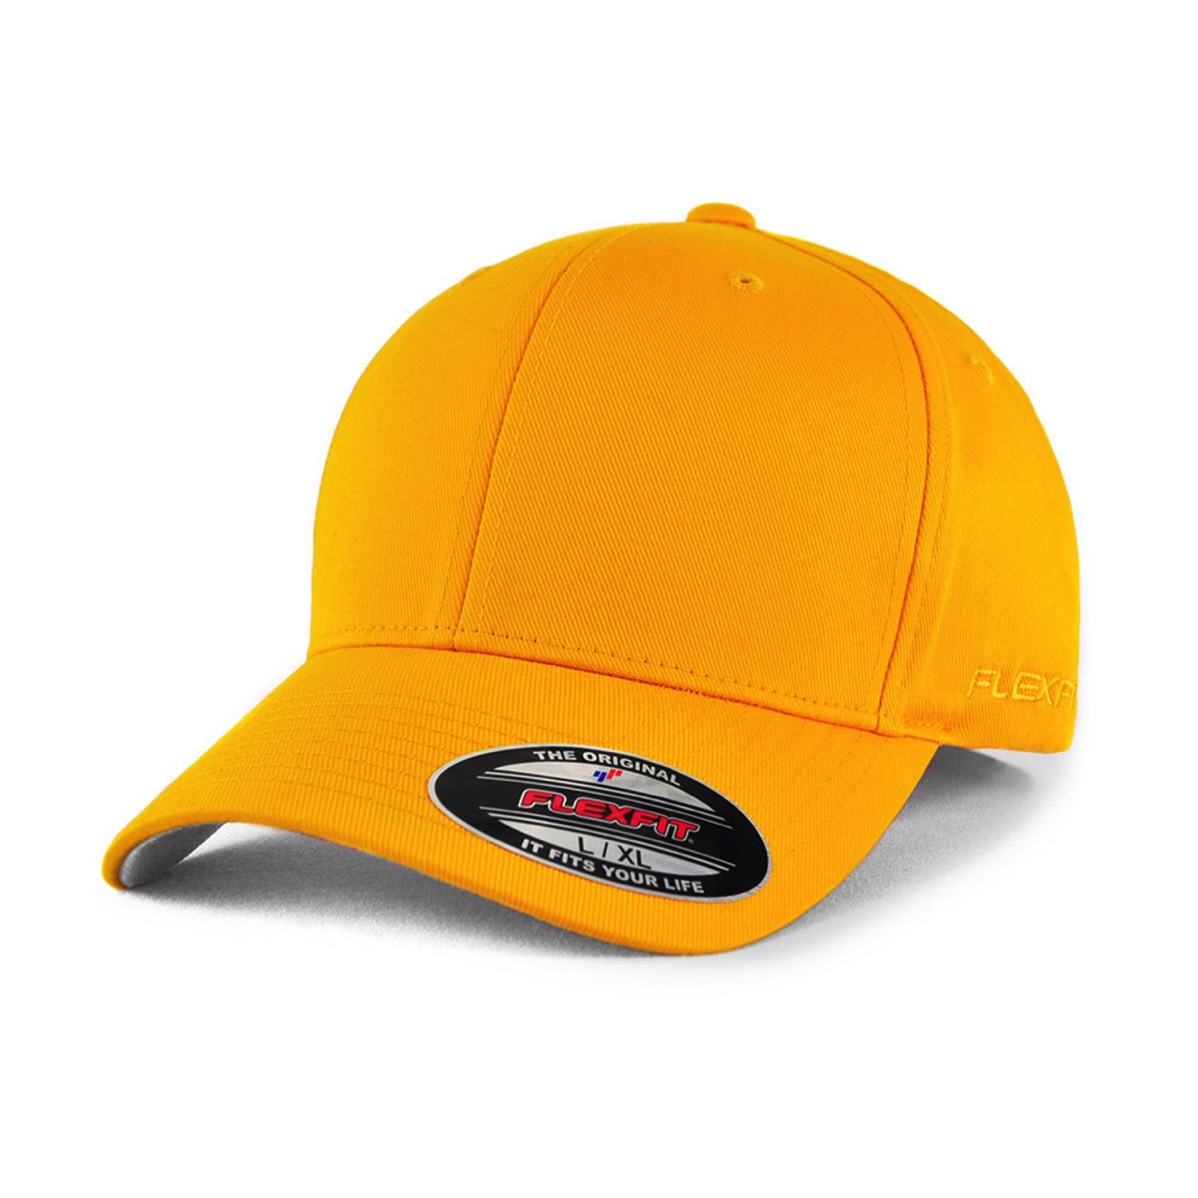 elevate flexfit cap available